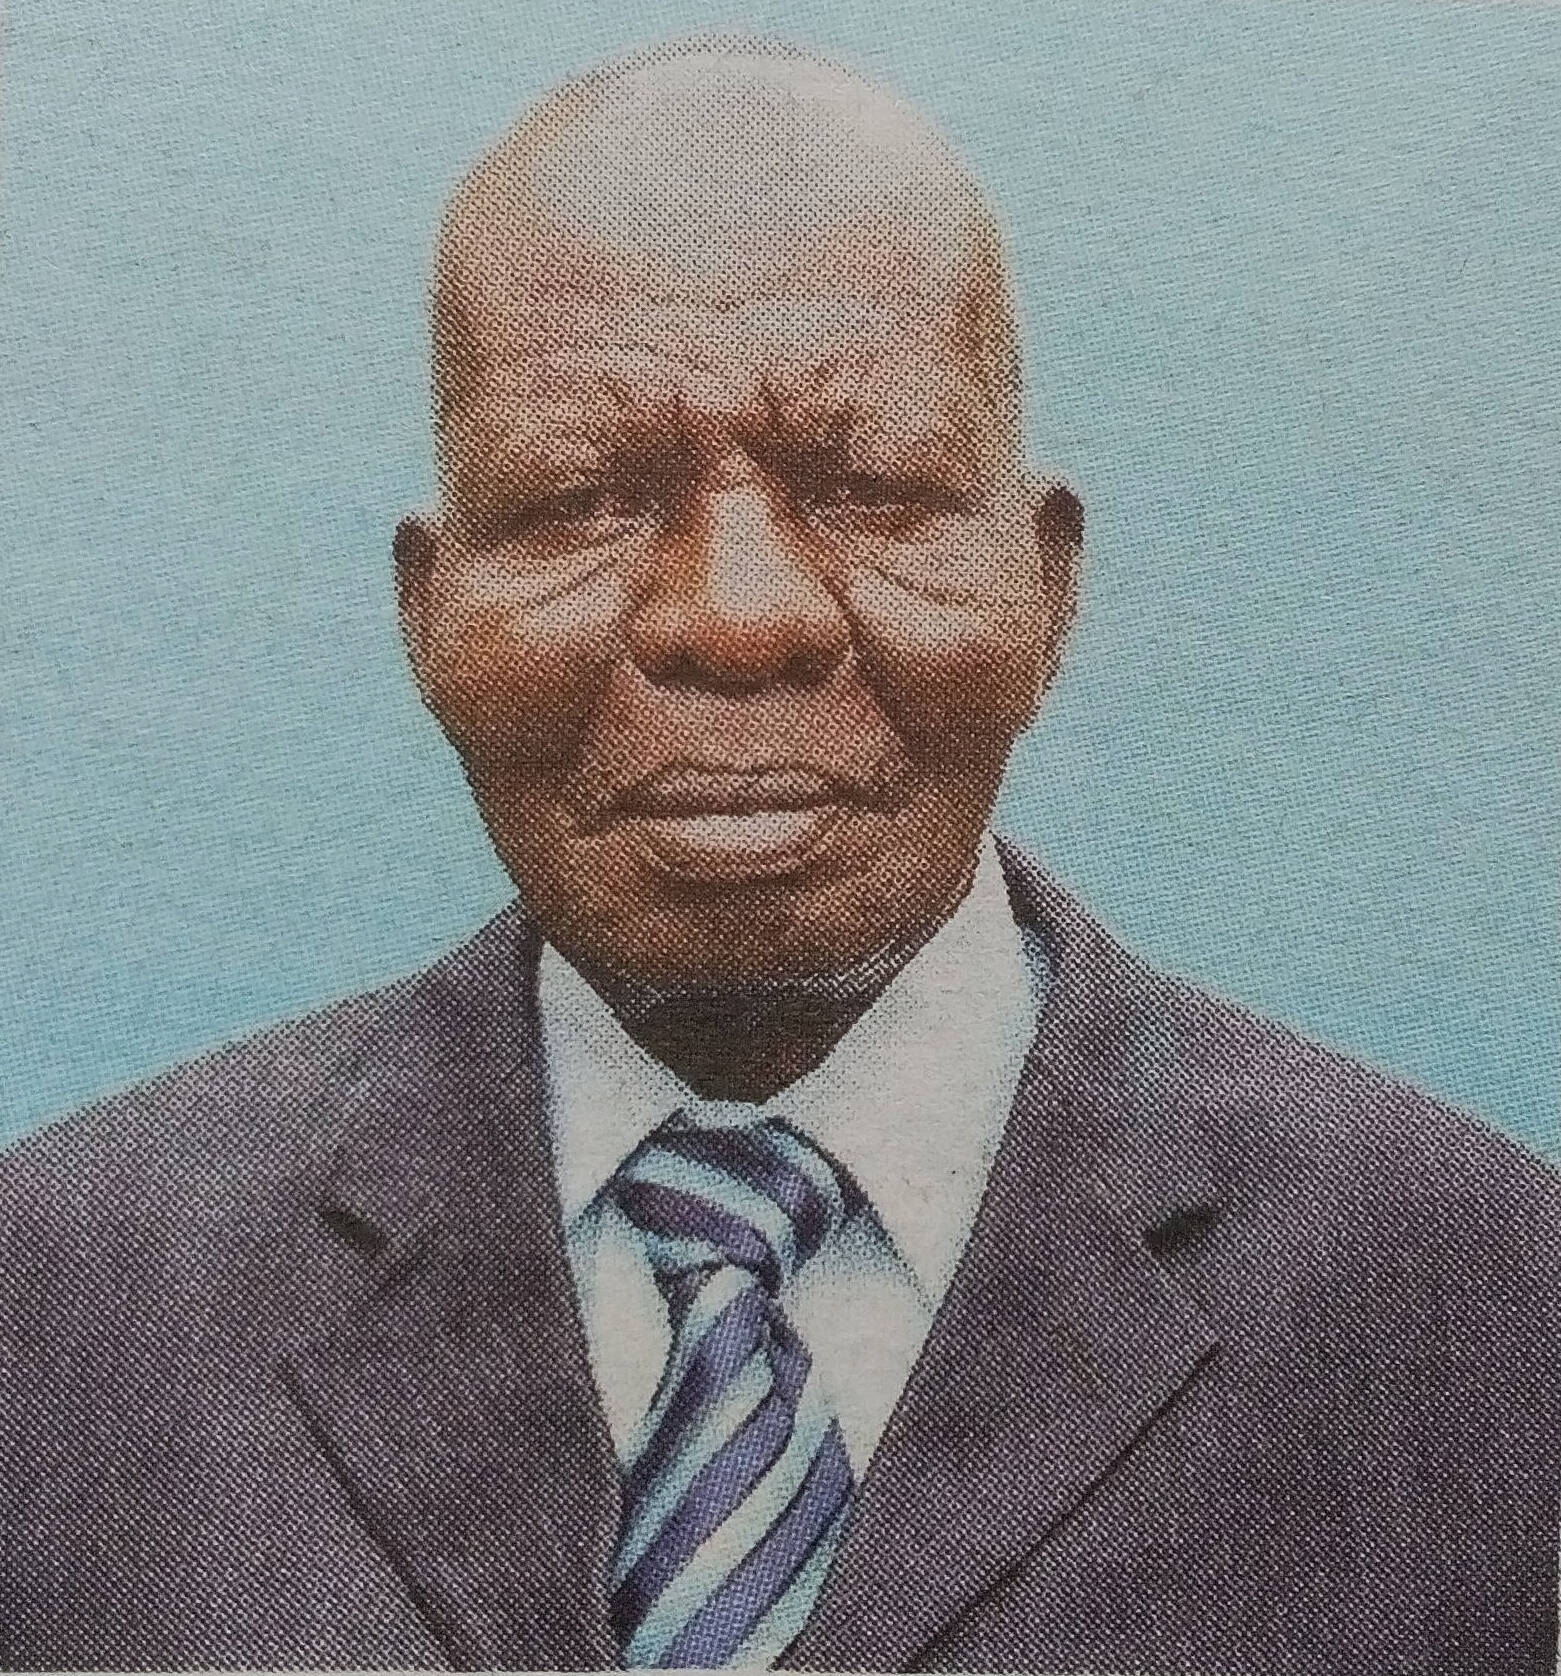 Obituary Image of Mzee Charles Edward Nyabanda